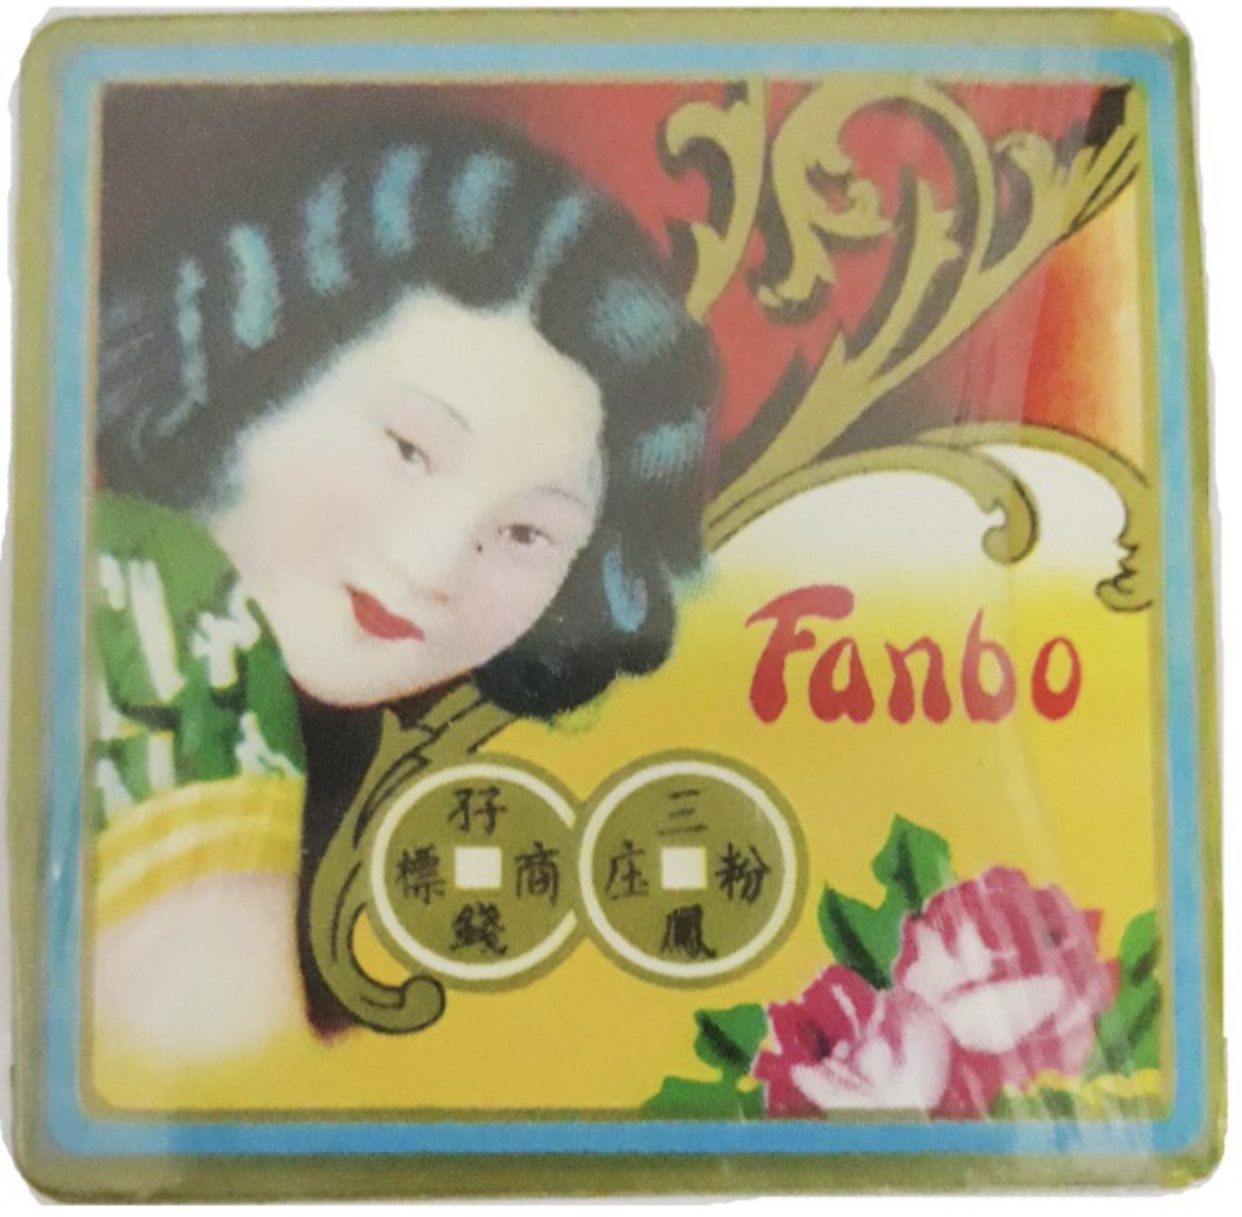 Fanbo Hoitong Powder